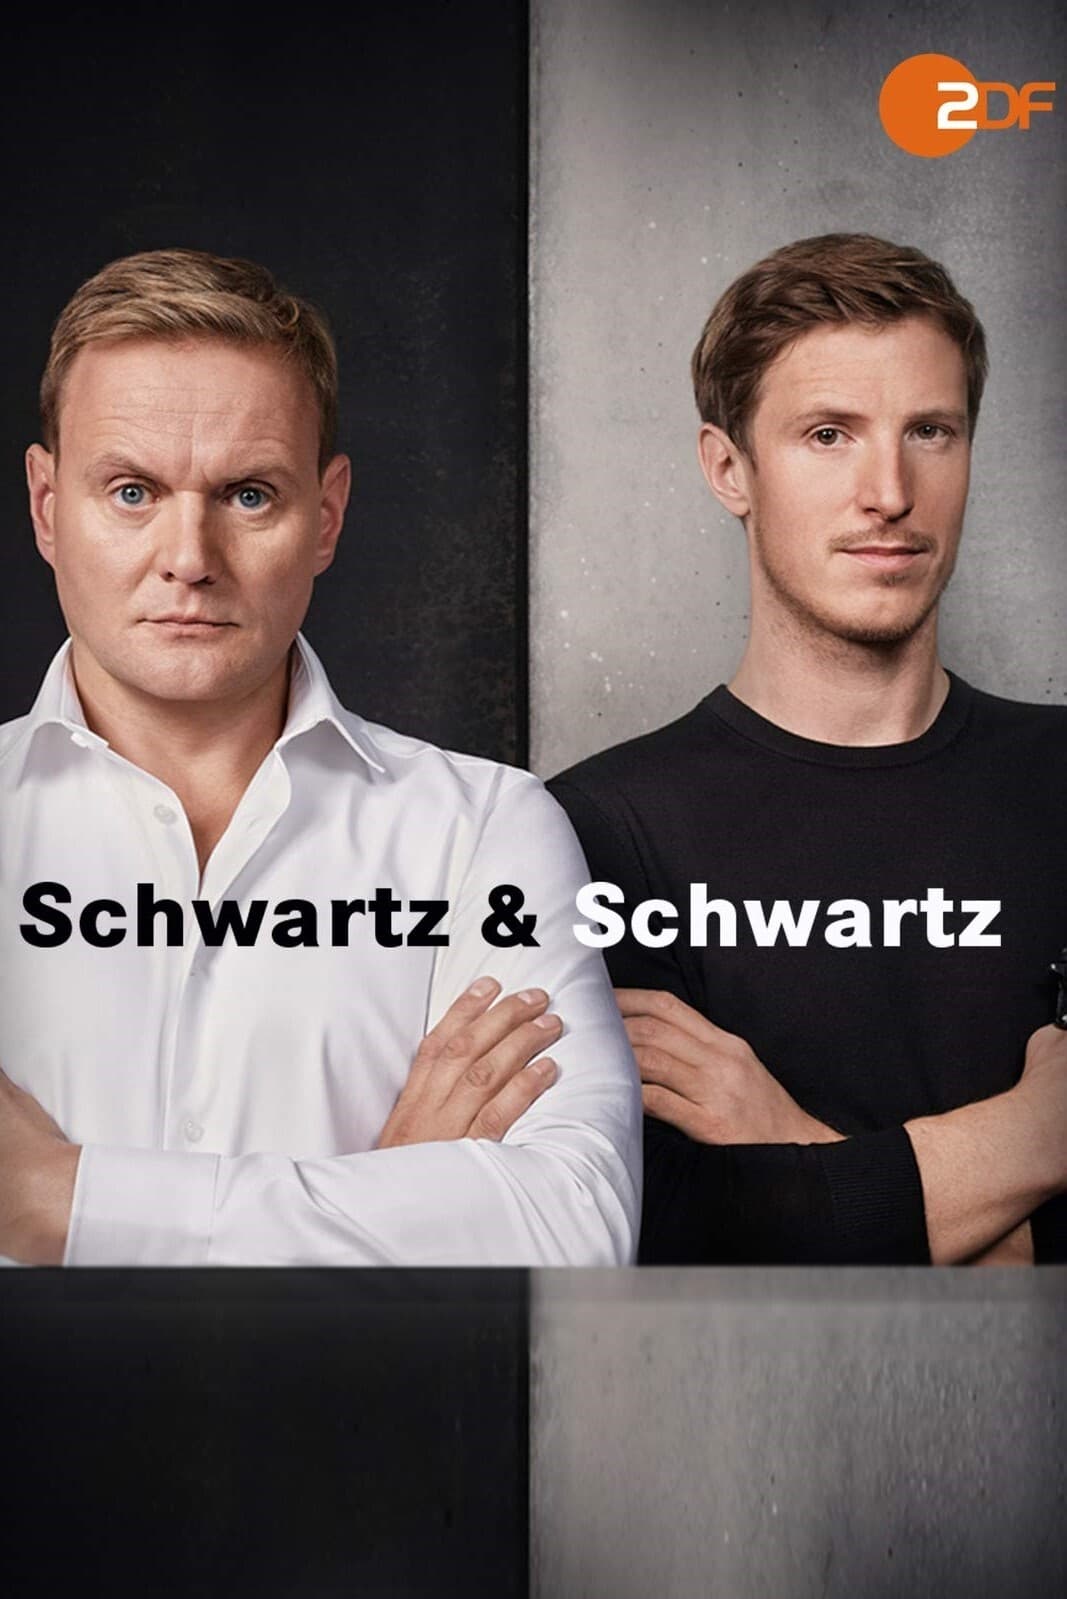 Schwartz & Schwartz TV Shows About Private Investigator